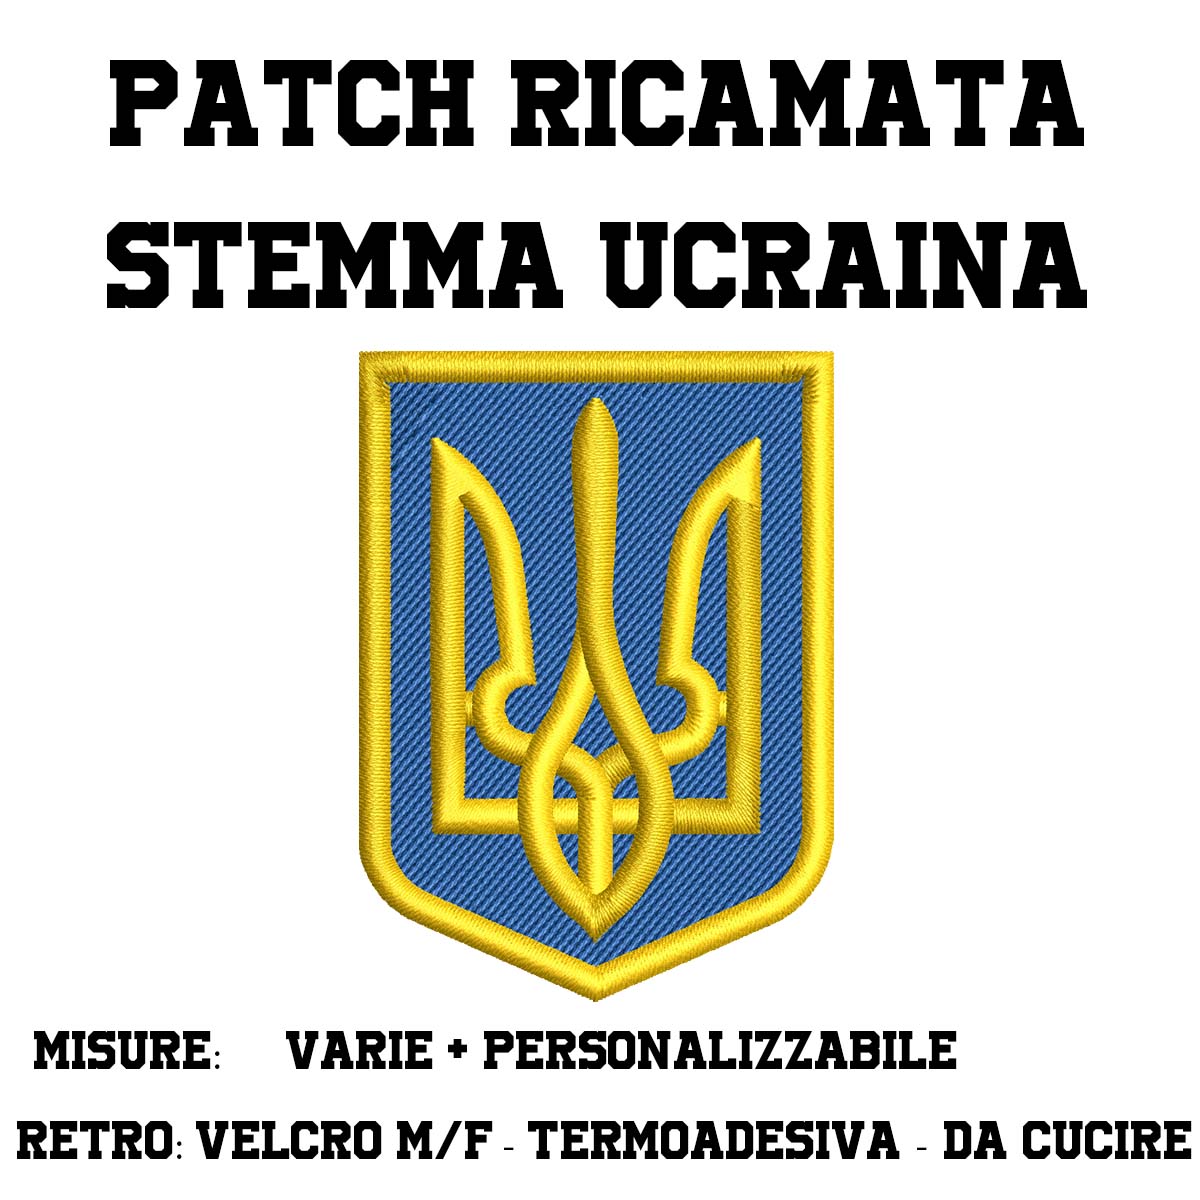 Patch stemma Ucraina ricamata